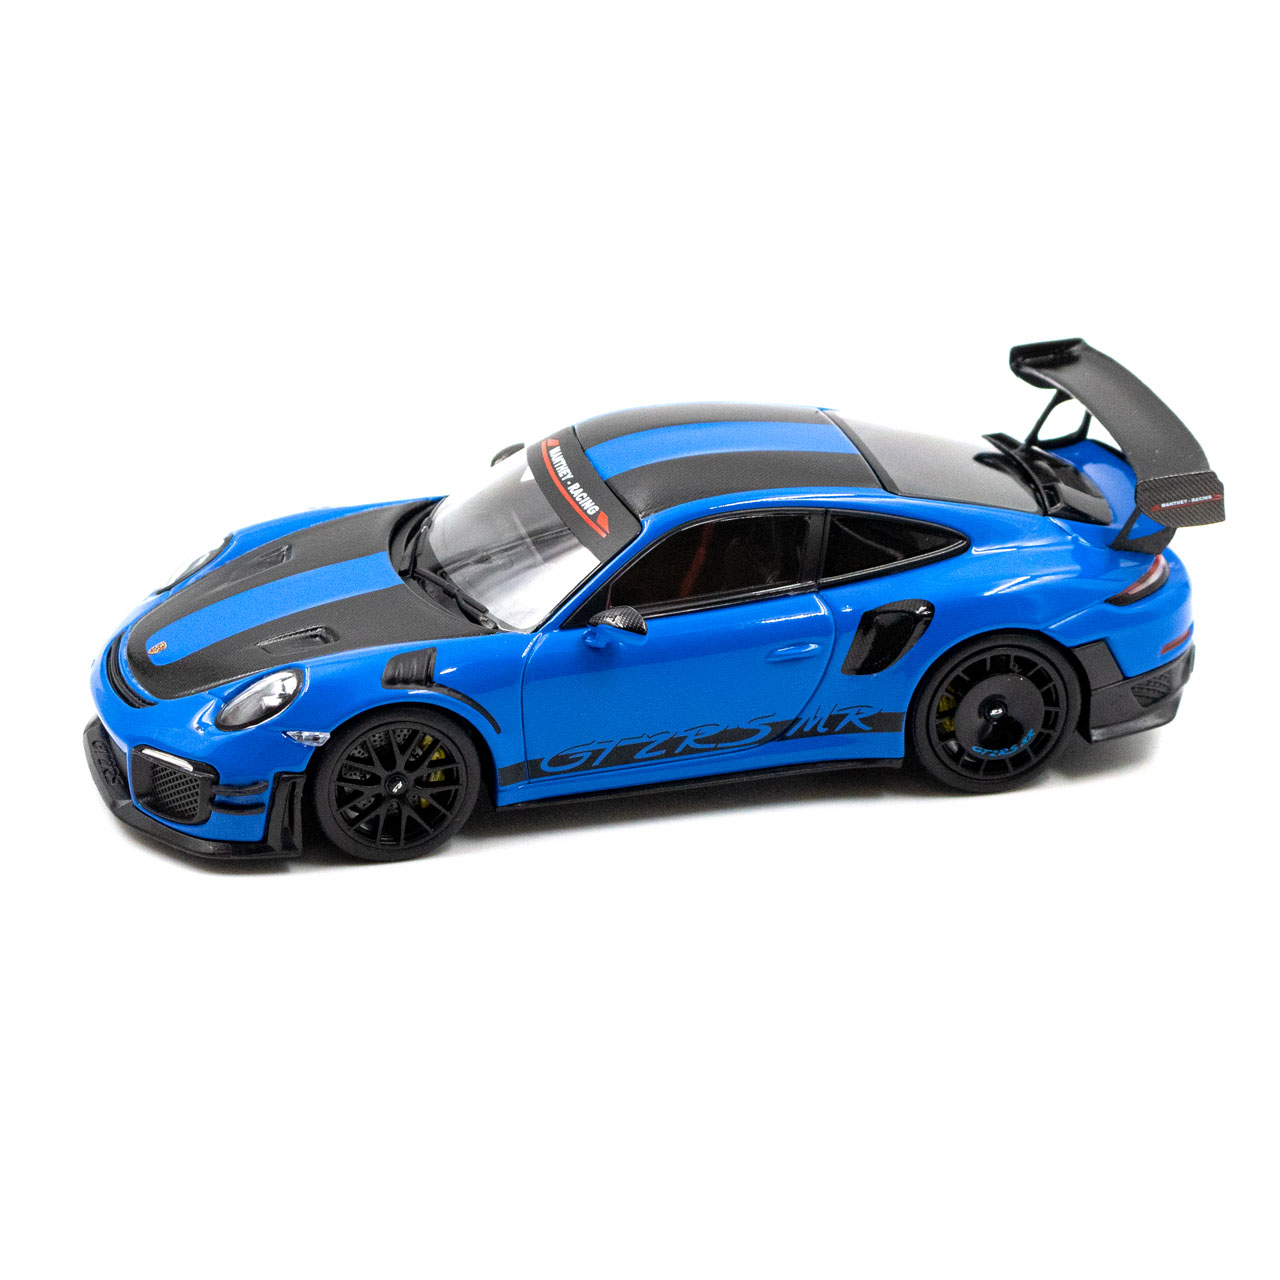 Manthey-Racing Porsche 911 GT2 RS MR 1:43 azul